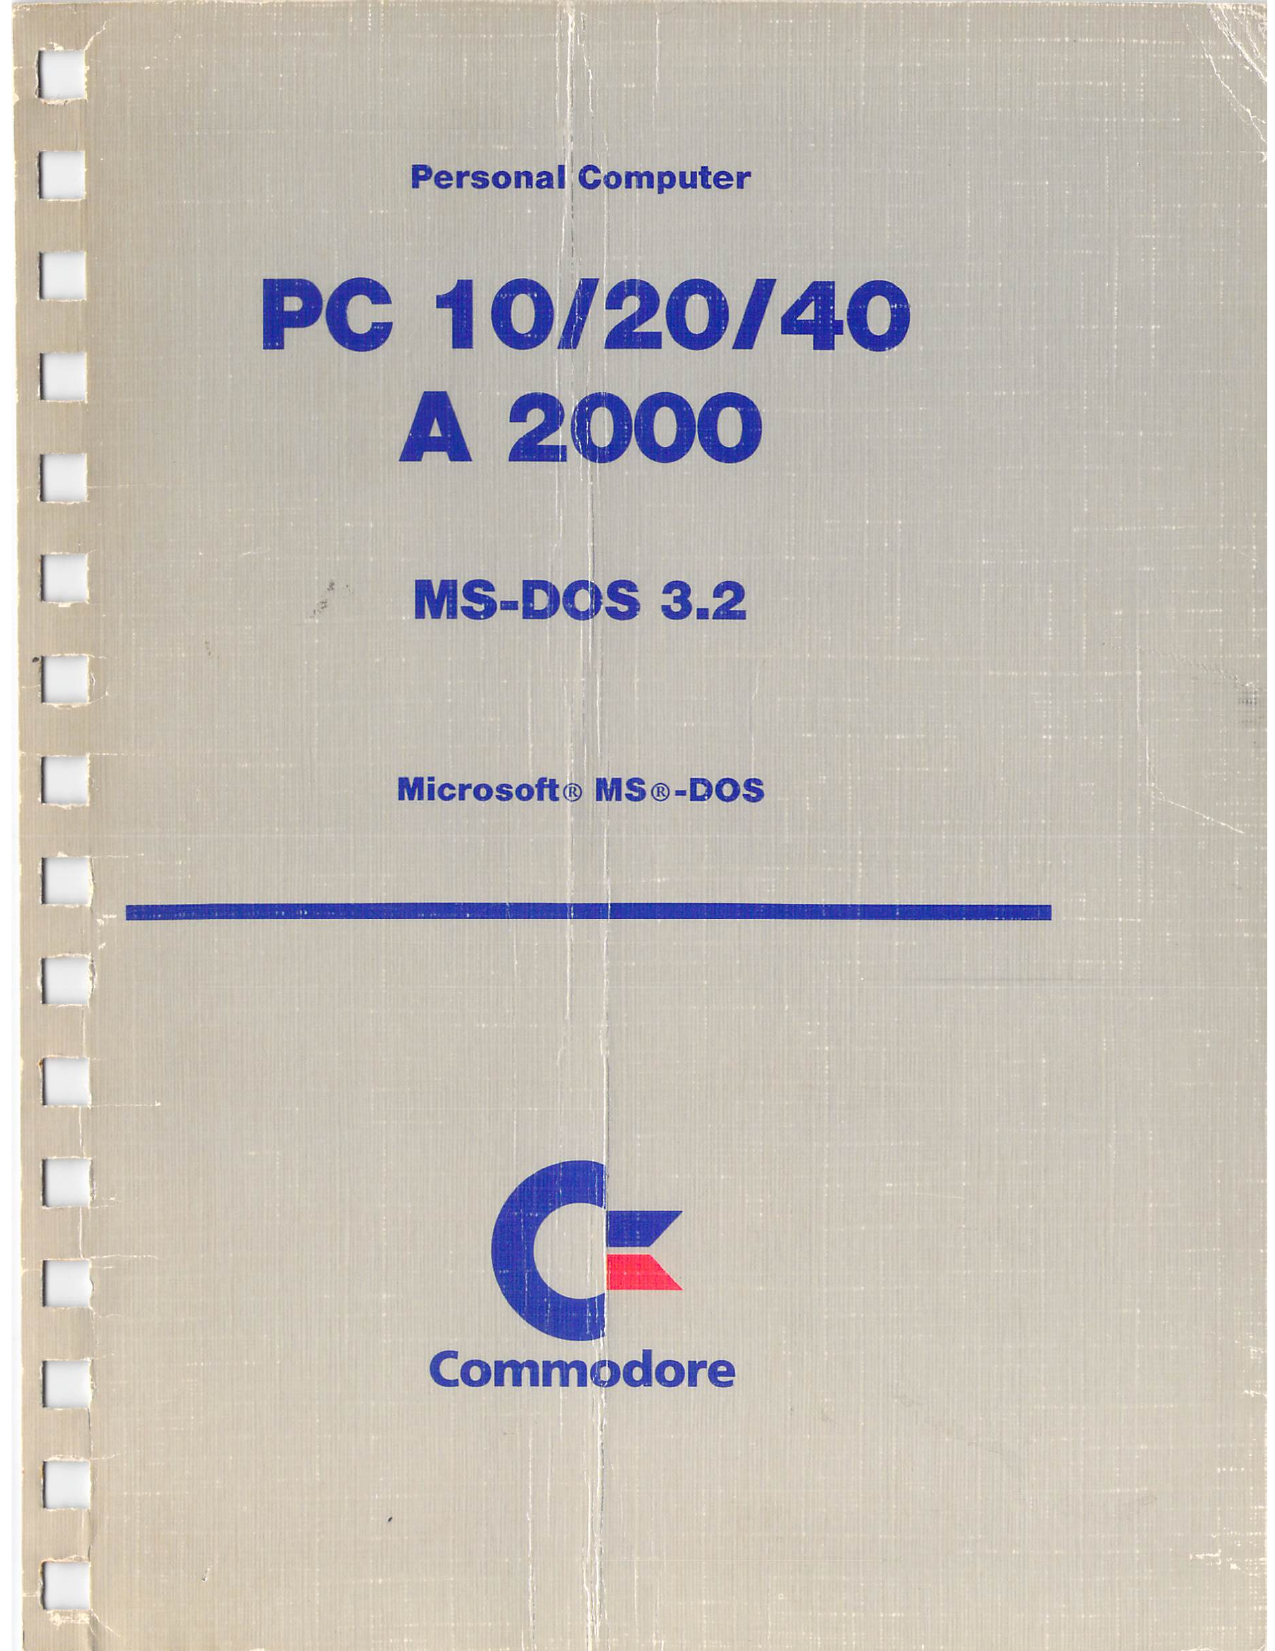 Manuale di istruzioni PC GW-BASIC Commodore Amiga a2000 scheda ponti PC 10 20 40 